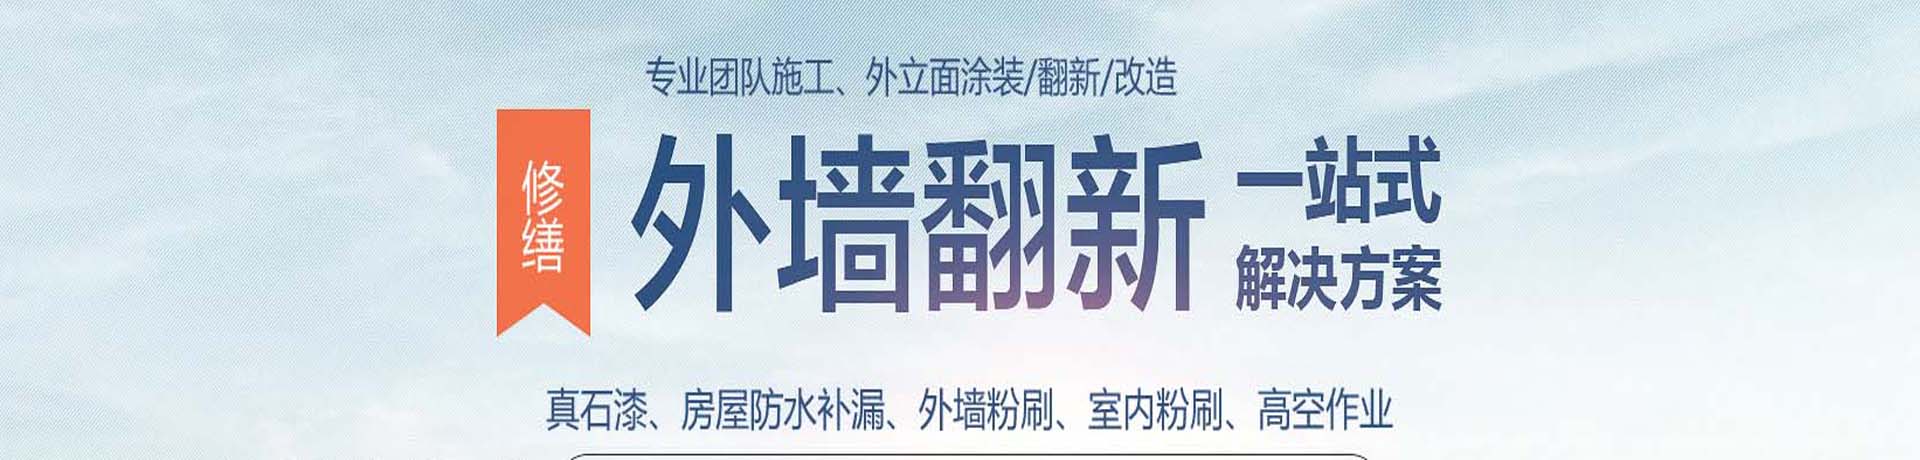 上海外墙高空涂料粉刷,外墙真石漆施工,上海外墙翻新公司,专业的墙面涂刷服务-上海物美环境工程有限公司 - 【推荐】 - 涂料名称